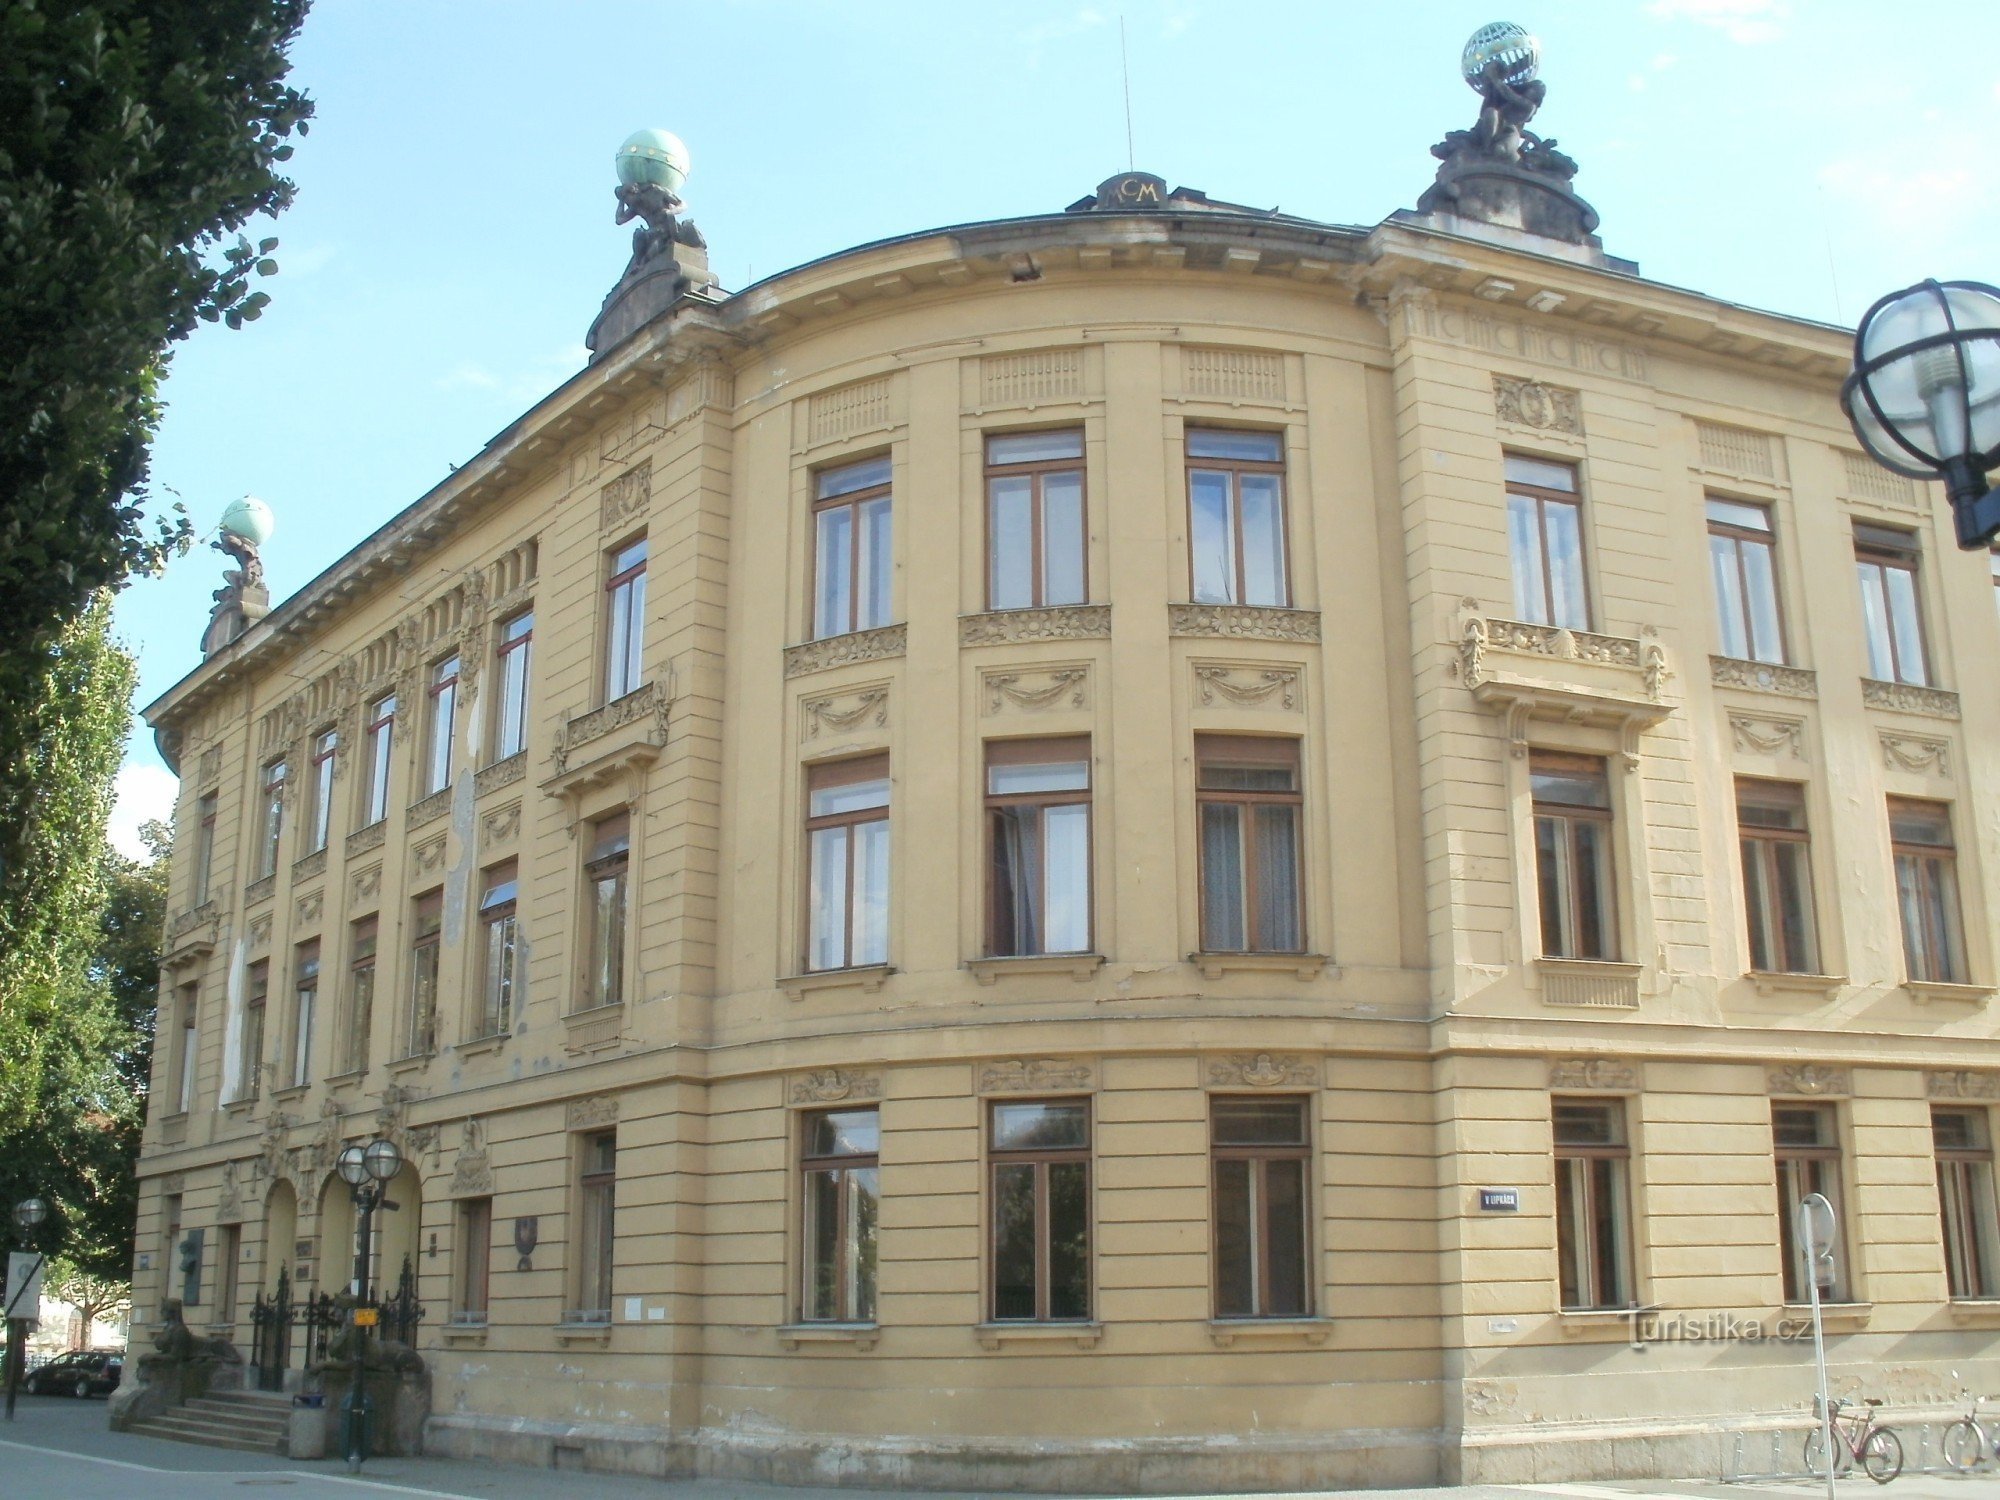 Hradec Králové - 教育学院